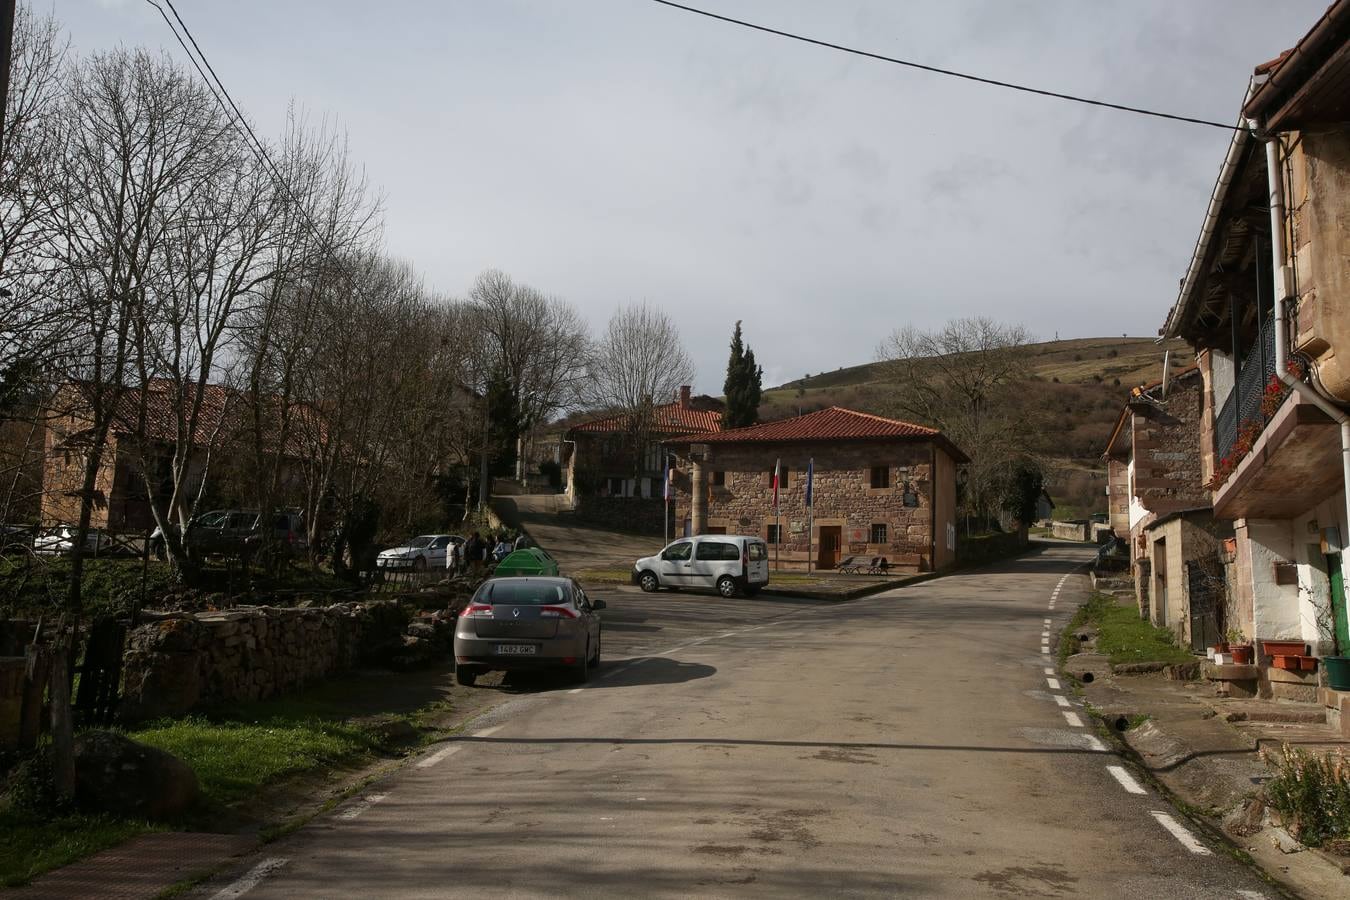 Fotos: Así es Pesquera, un pueblo con encanto en la comarca de Campoo-Los Valles